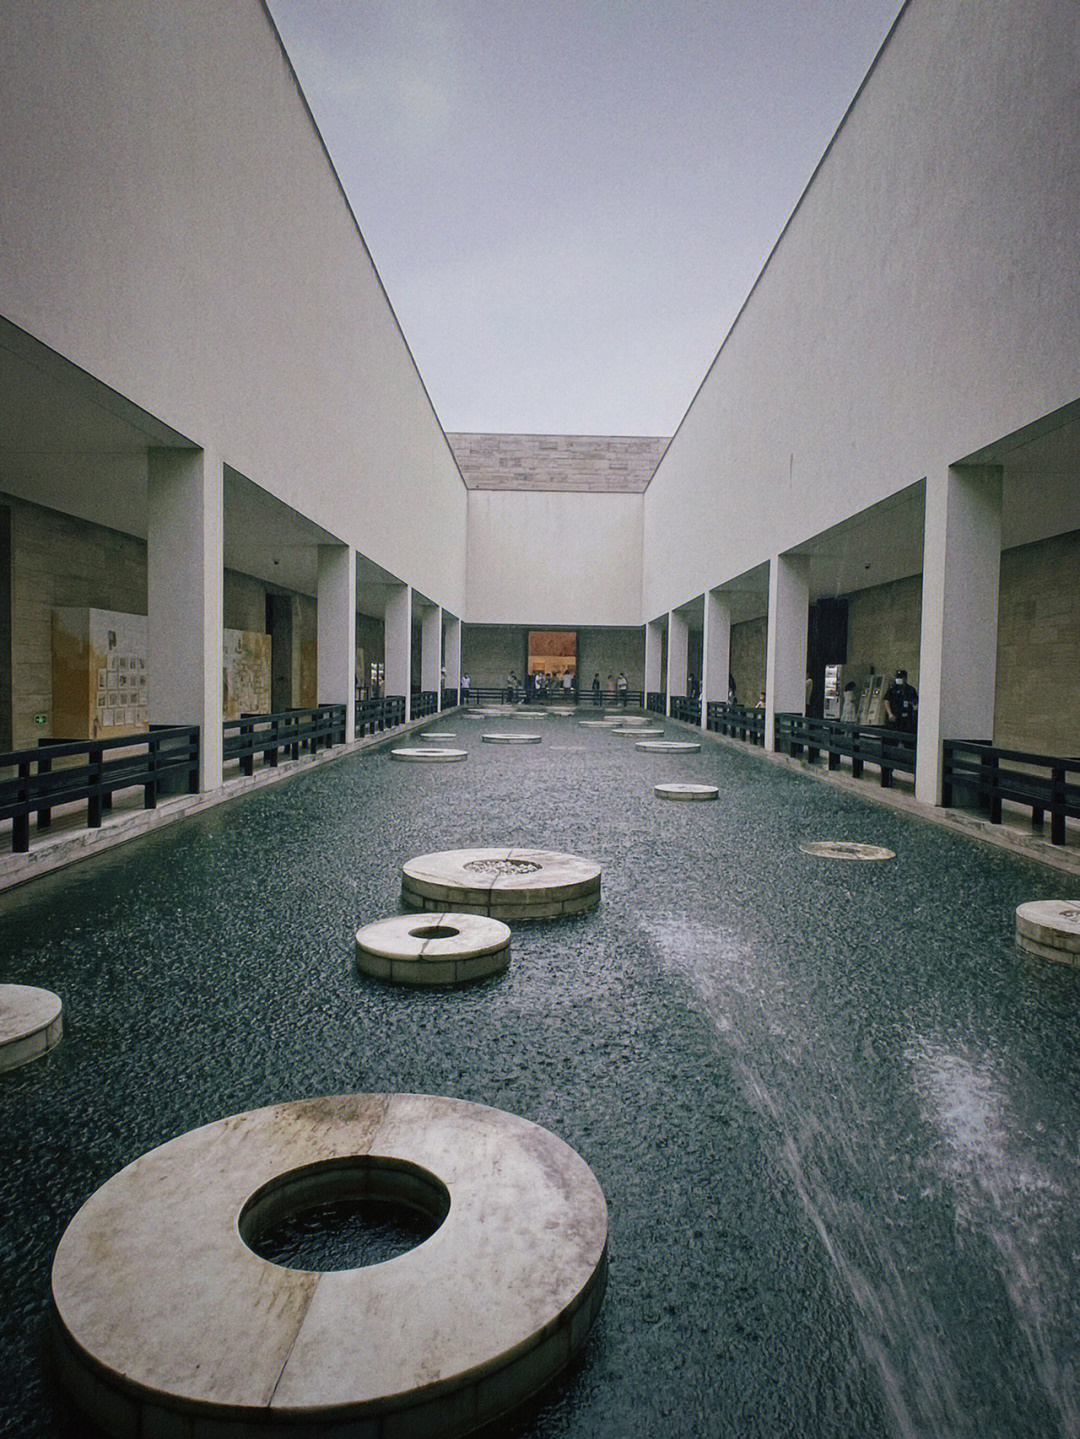 良渚博物馆是谁设计的图片